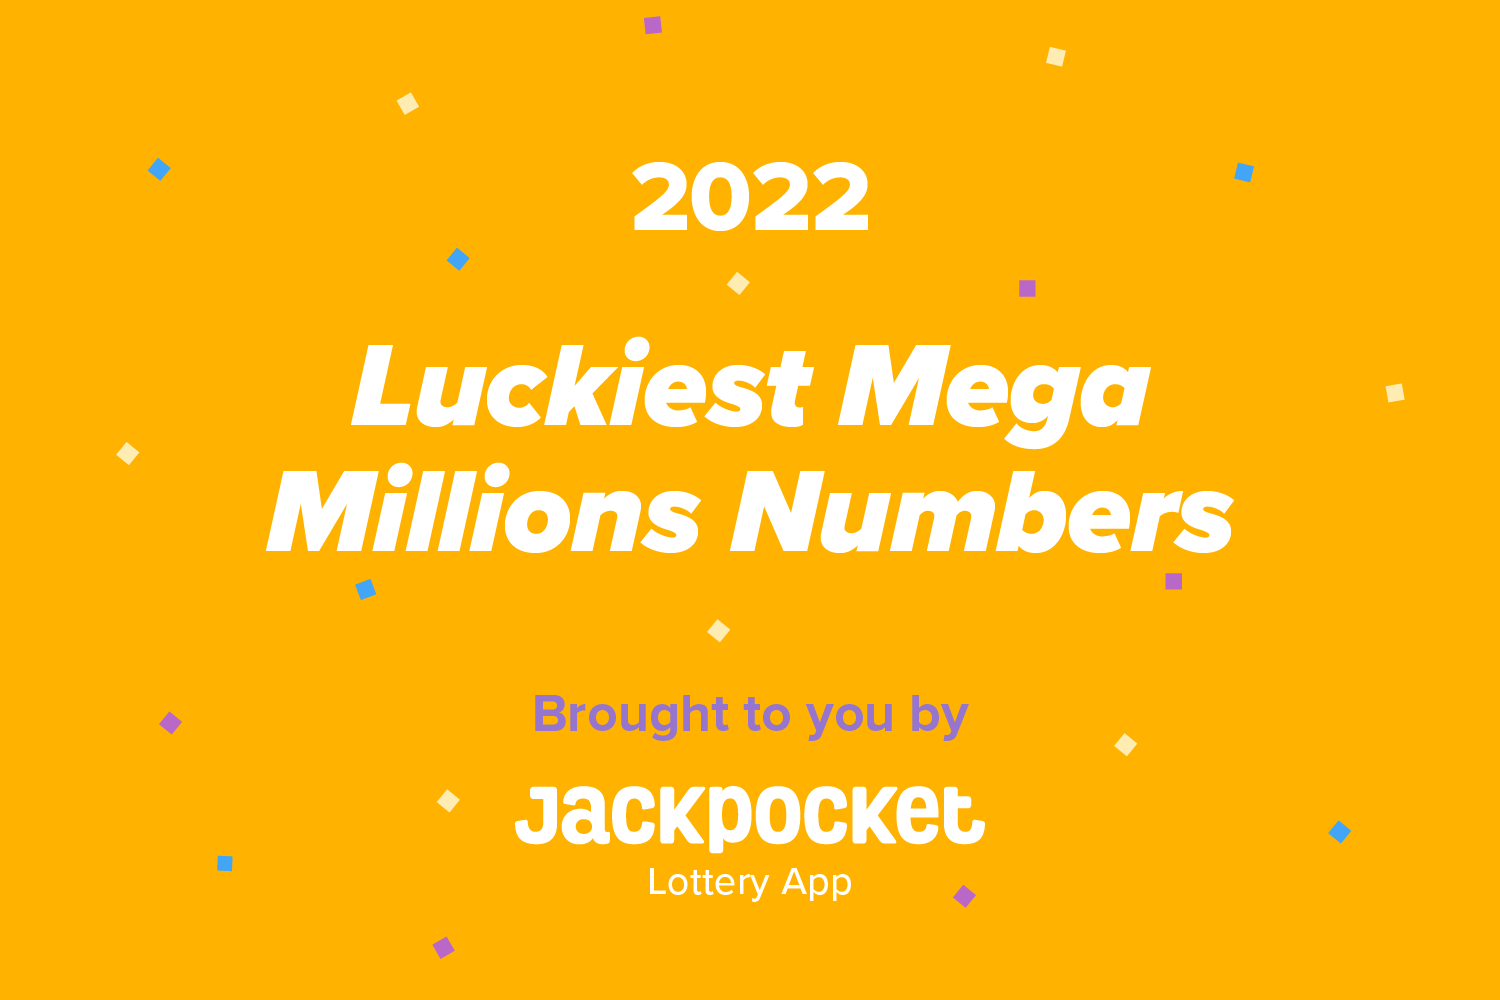 Luckiest Mega Millions Numbers in 2022